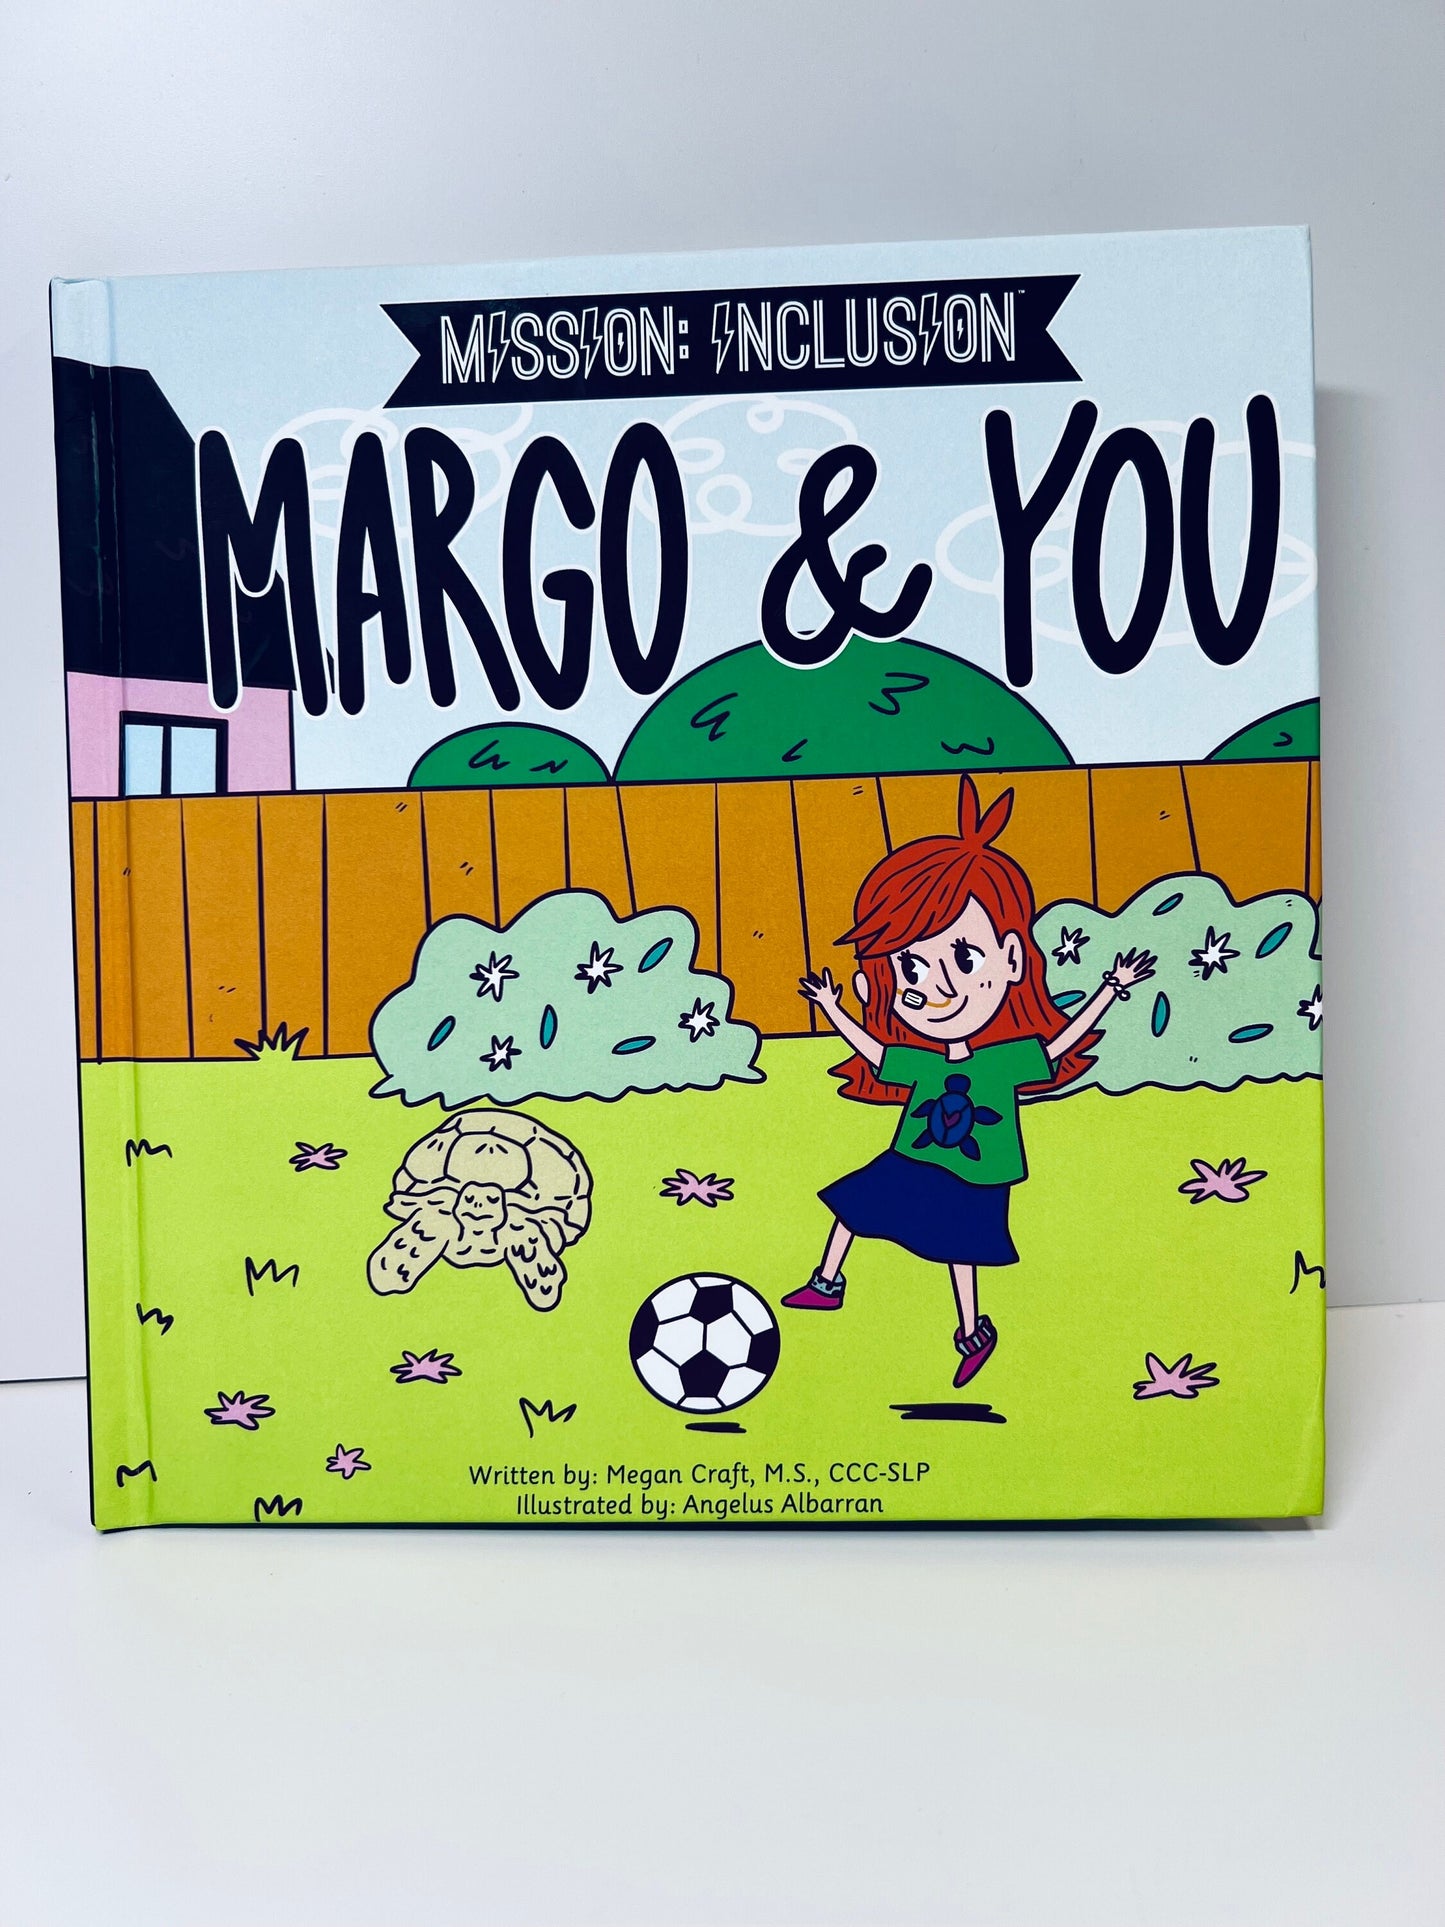 Kit de cuentos para Margo y tú, accesorios de cuentos inclusivos, libro de terapia del habla